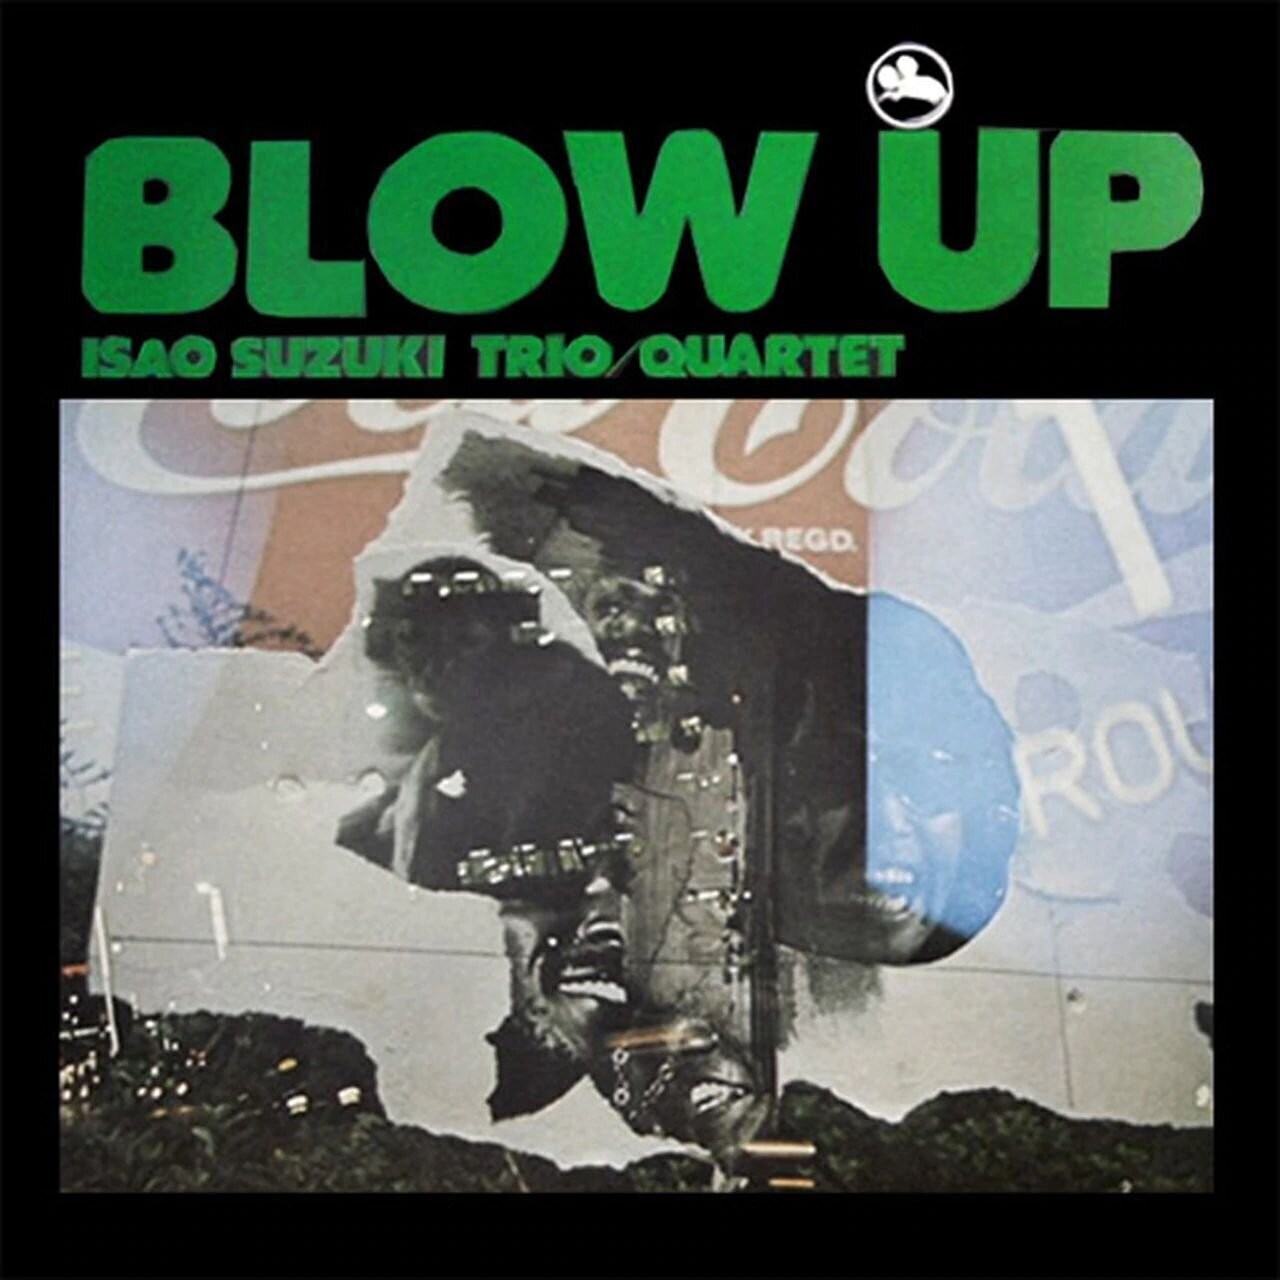 Isao Suzuki Trio - Blow Up (2 LP)